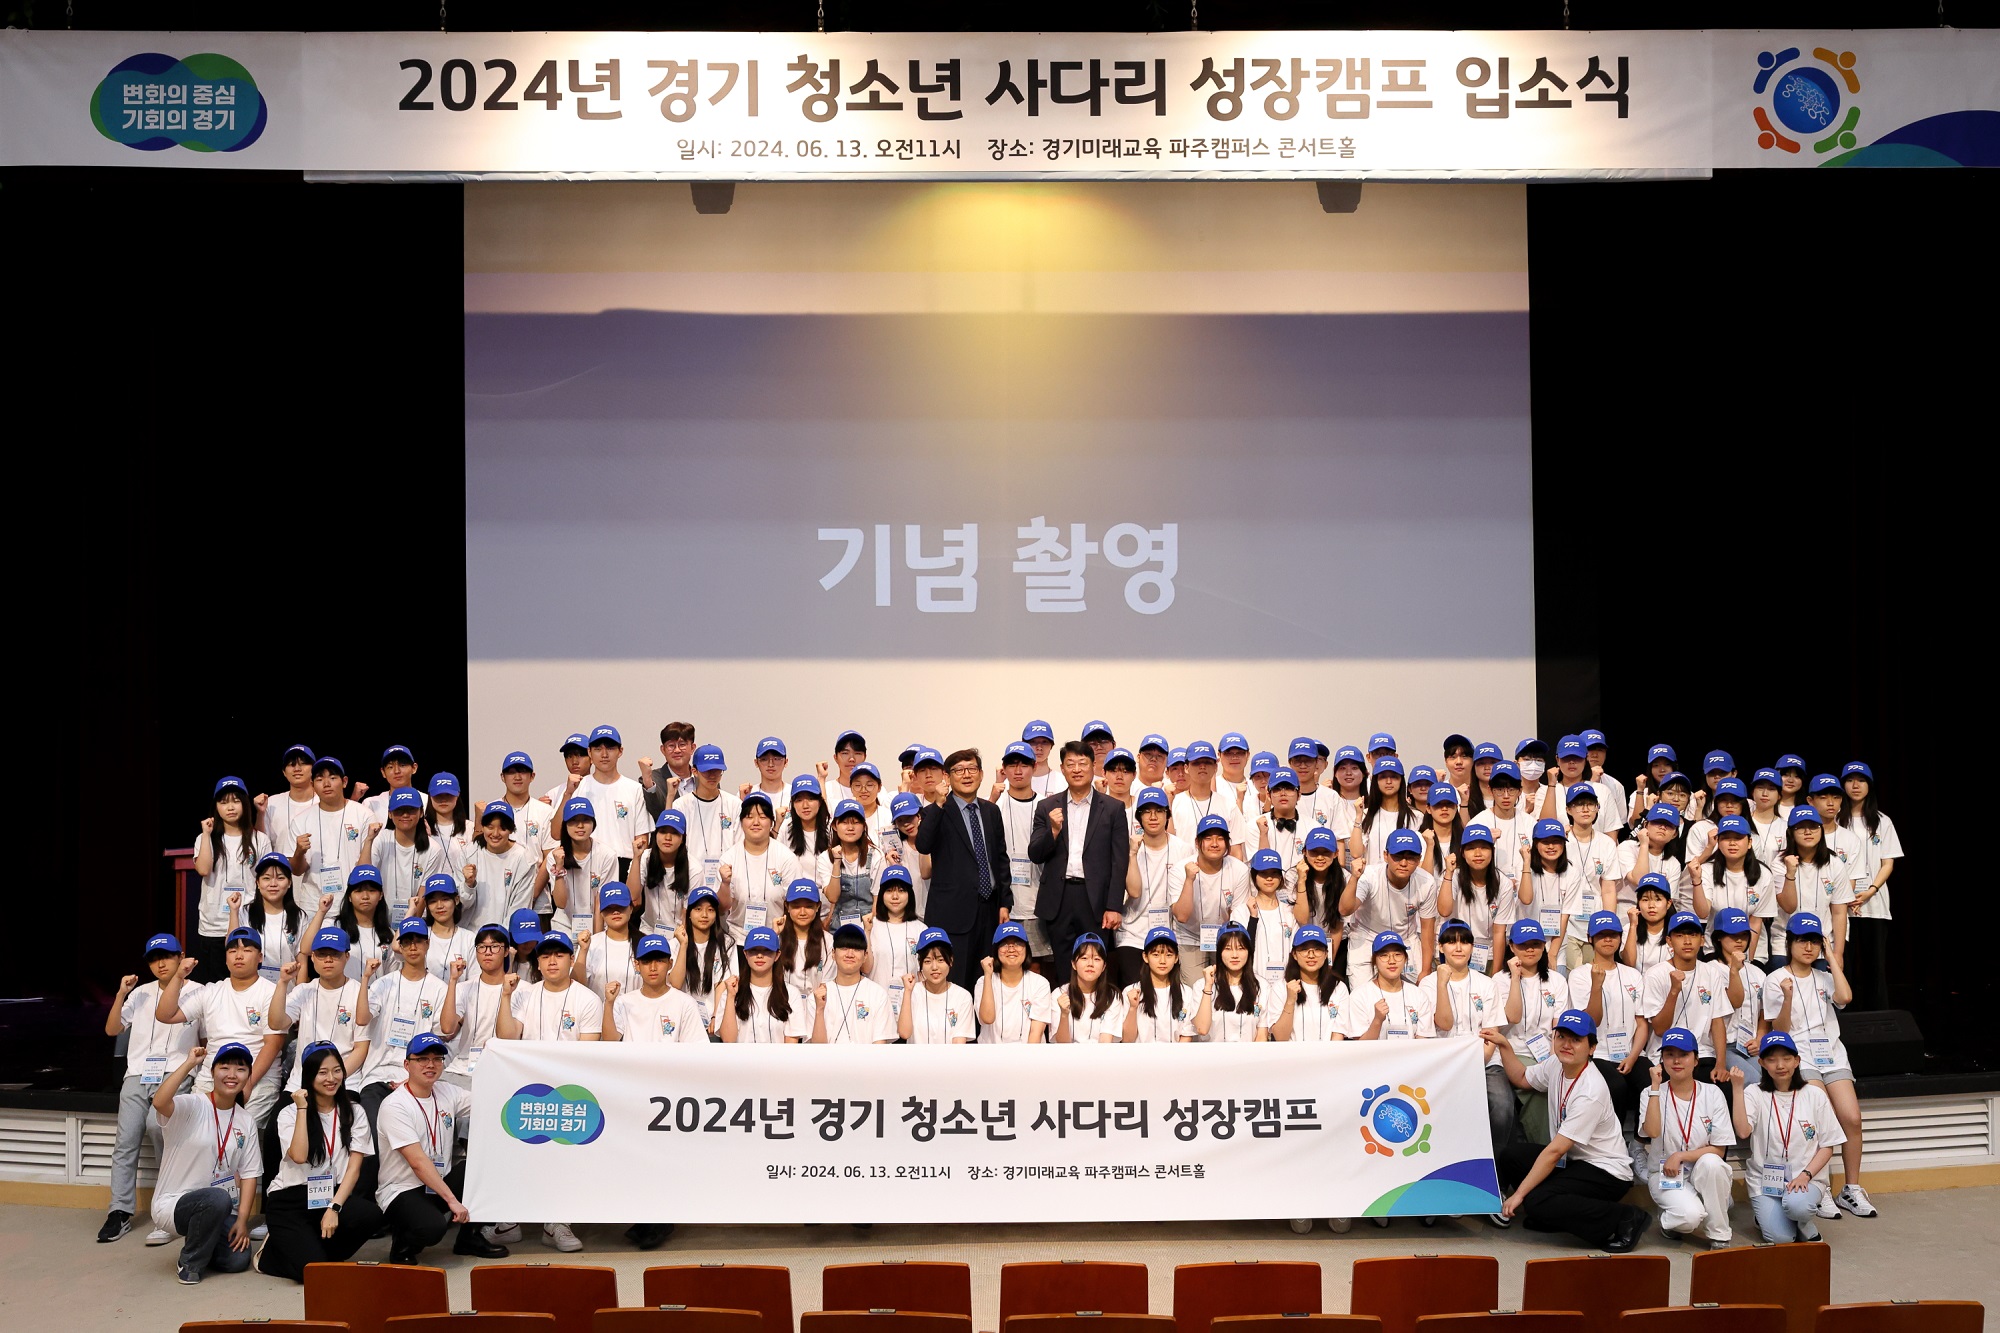 ‘2024년 경기 청소년 사다리’ 성장캠프 입소식